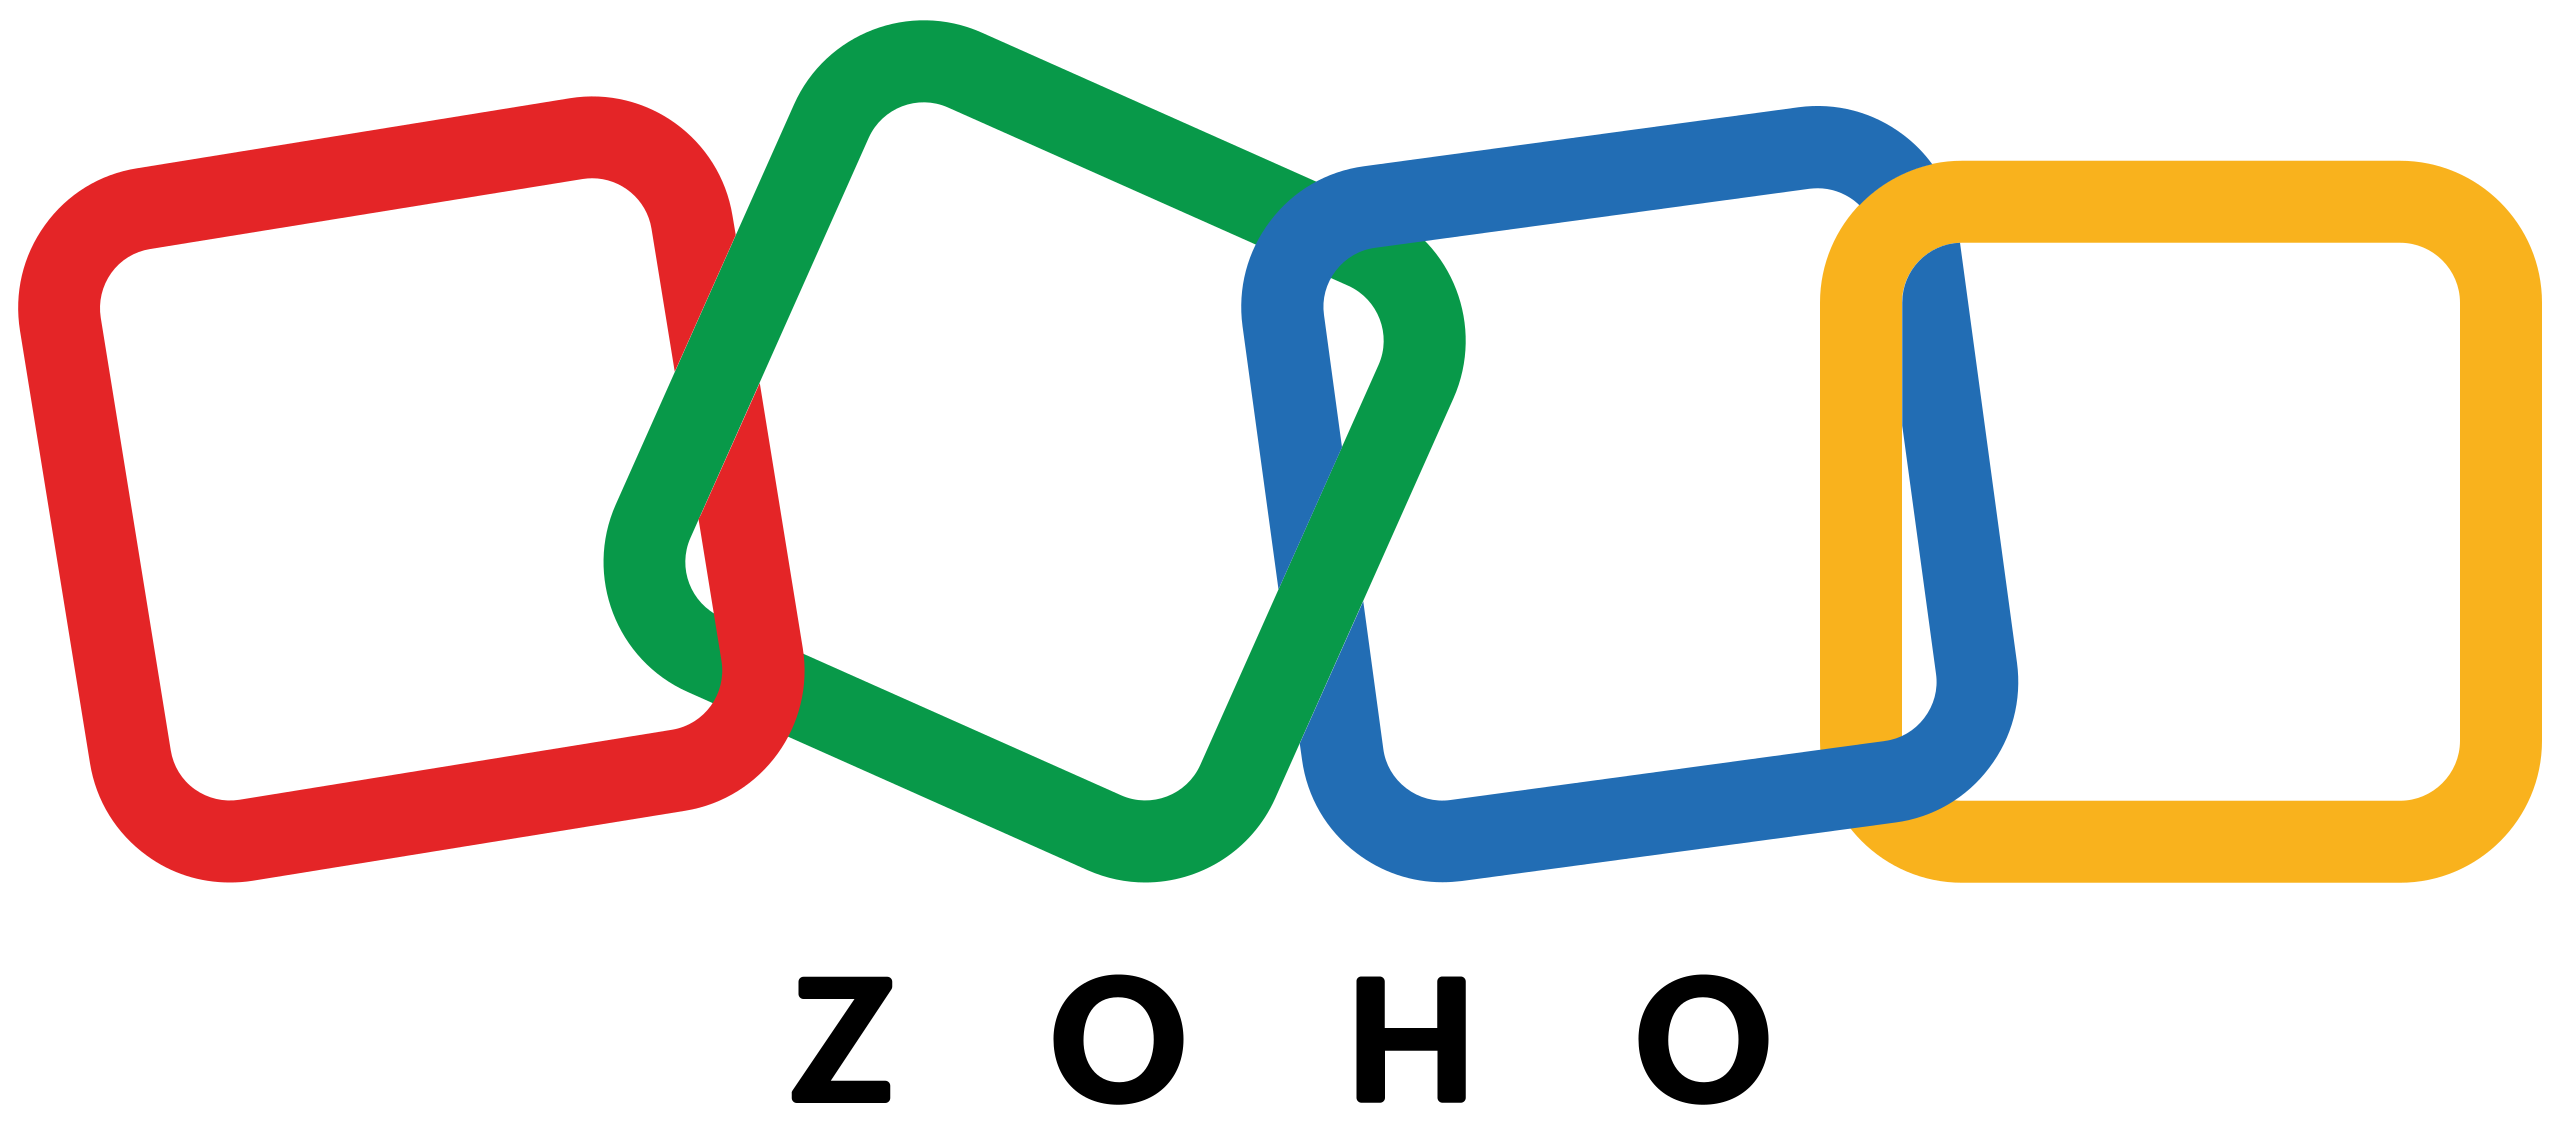 zoho-crm-logo